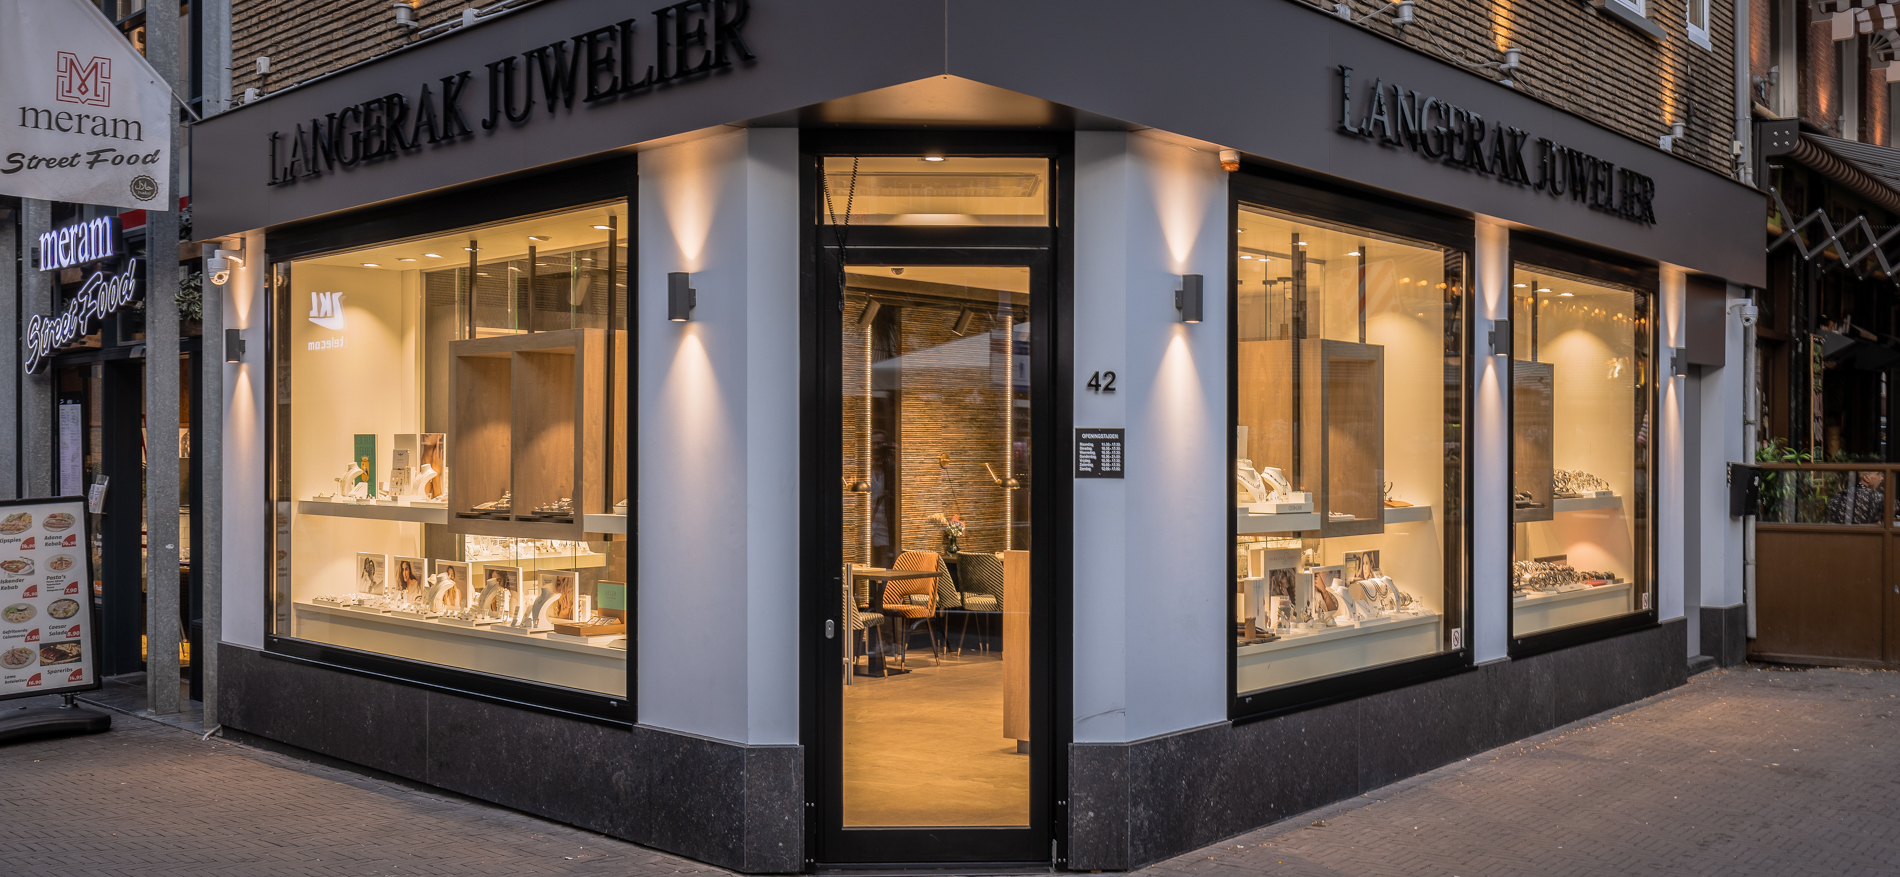 Langerak Juweliers | Den Haag